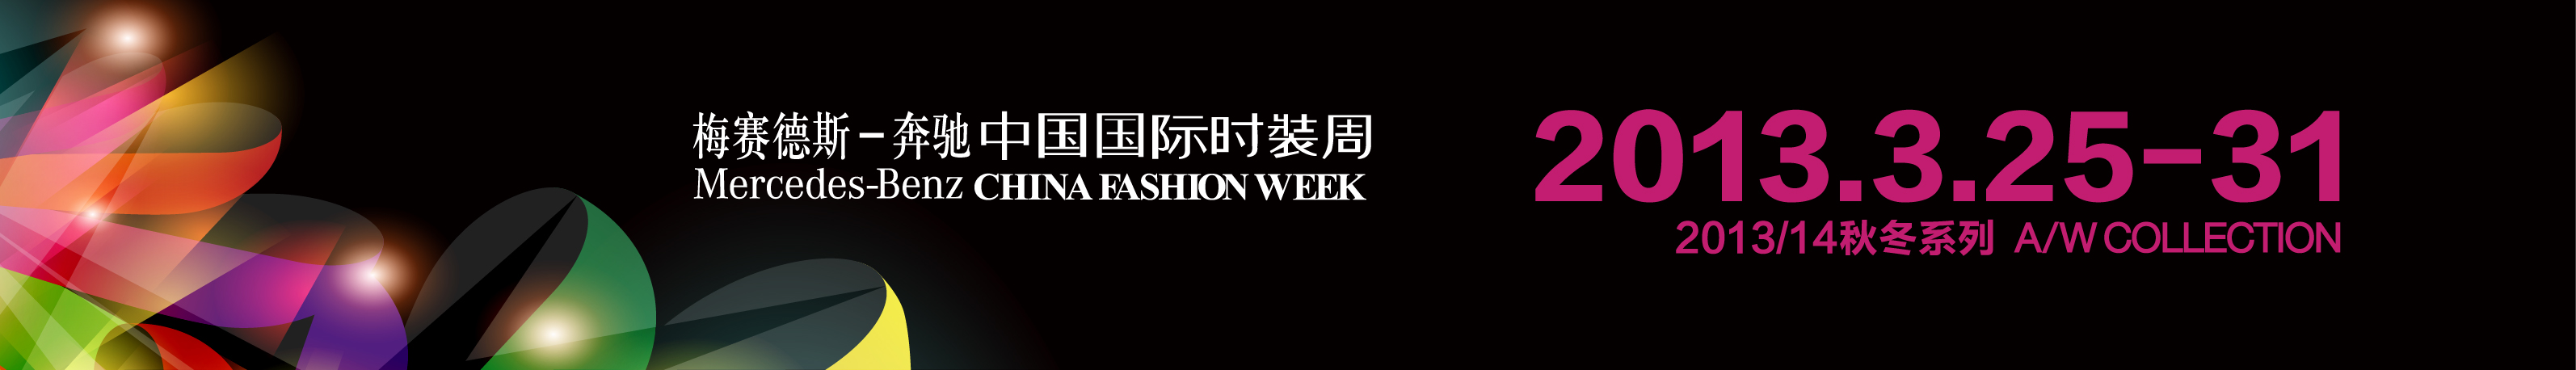 china fashion week